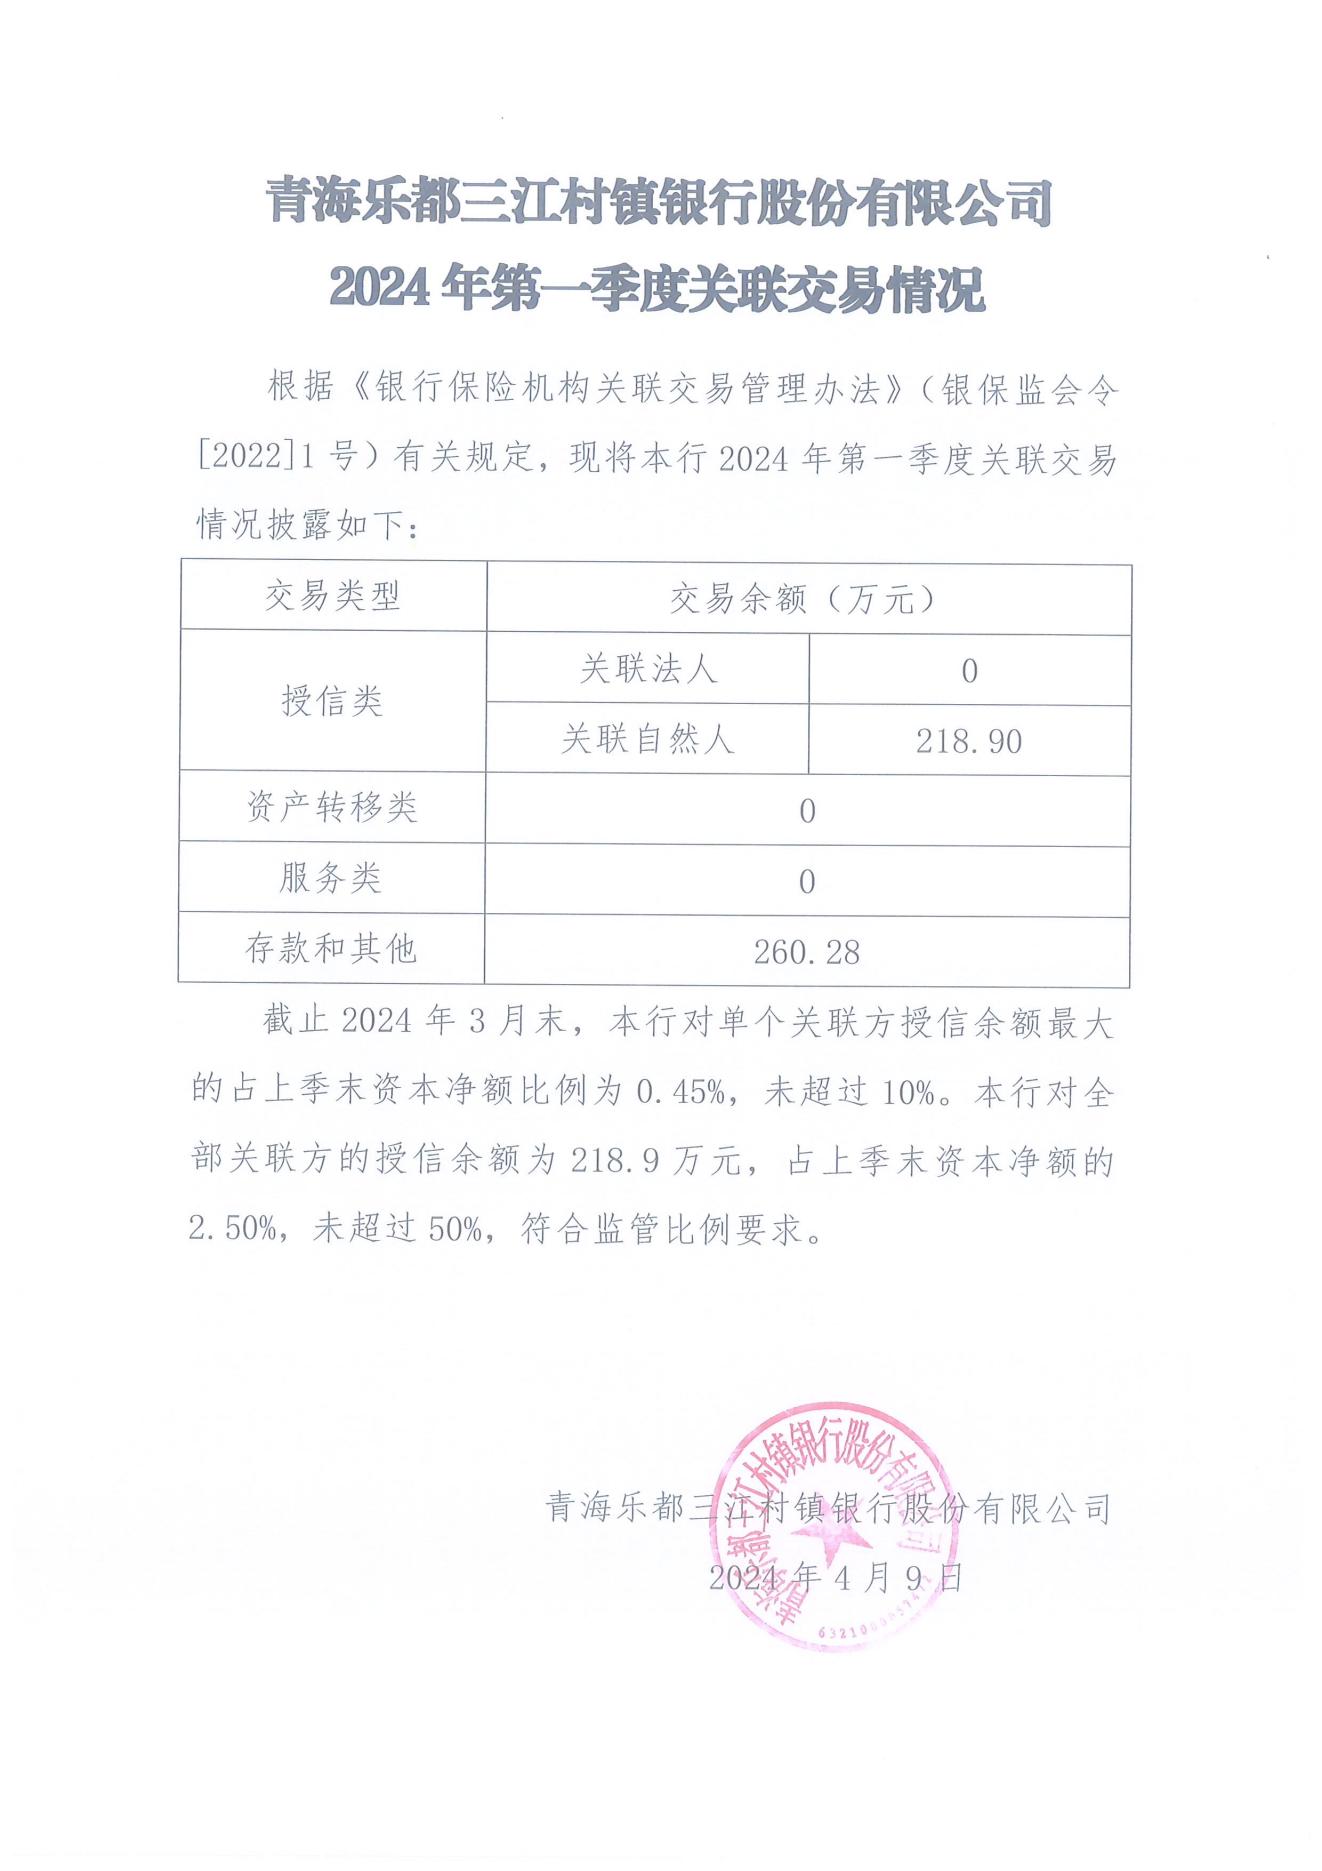 青海乐都三江村镇银行股份有限公司2022年第三季度关联交易情况（披露）_00